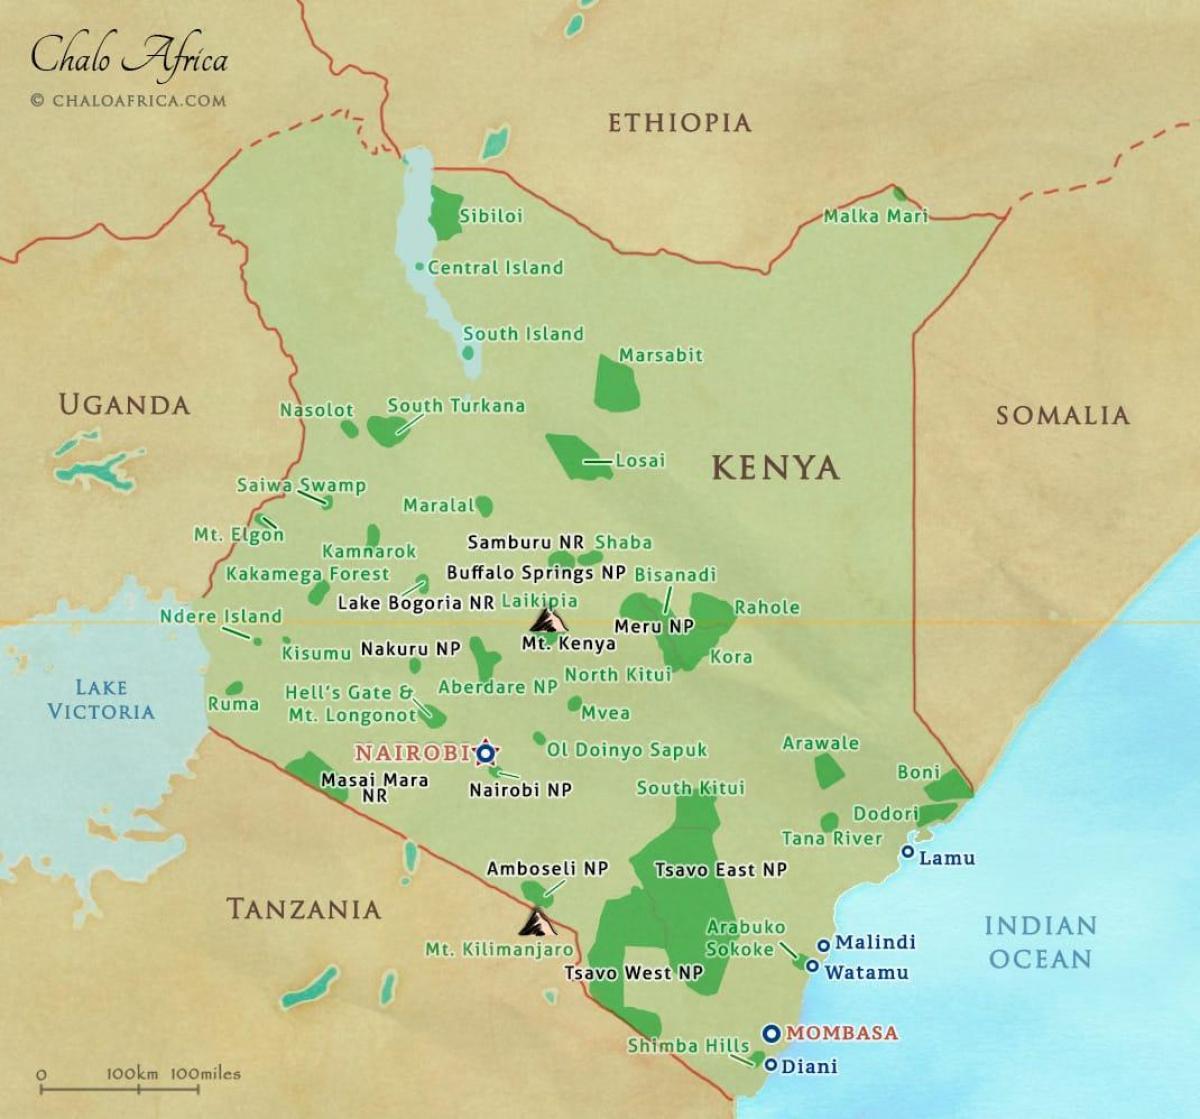 χάρτης της Κένυας εθνικά πάρκα και καταφύγια